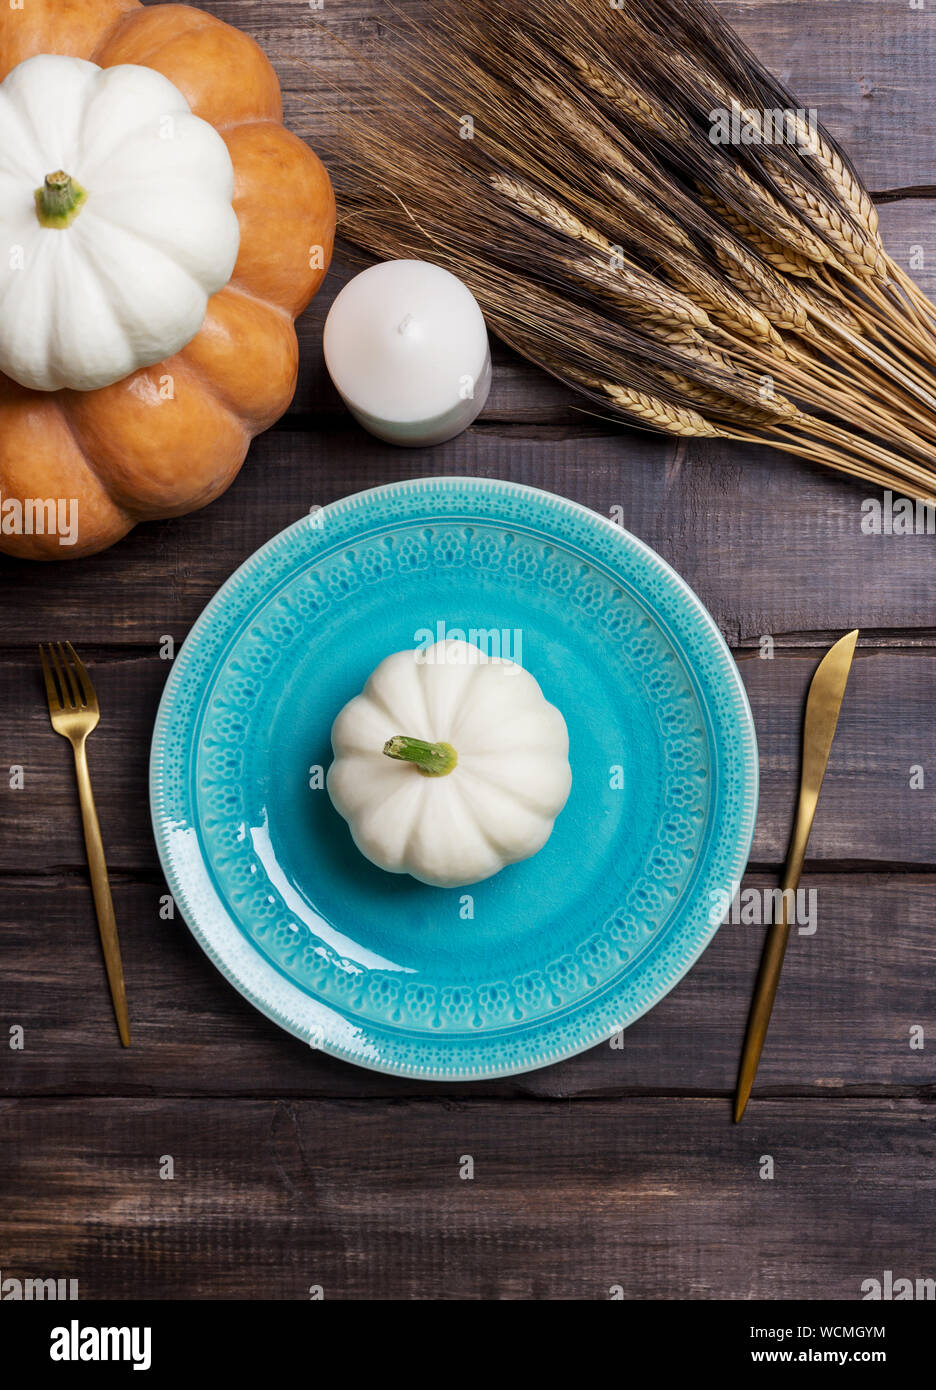 Assiette de service bleu bébé blanc avec squash sur elle, de la vaisselle d'or, une bougie et le blé sur la table en bois. Concept de l'ensemble de tables de récolte, pour manger Thanksg Banque D'Images